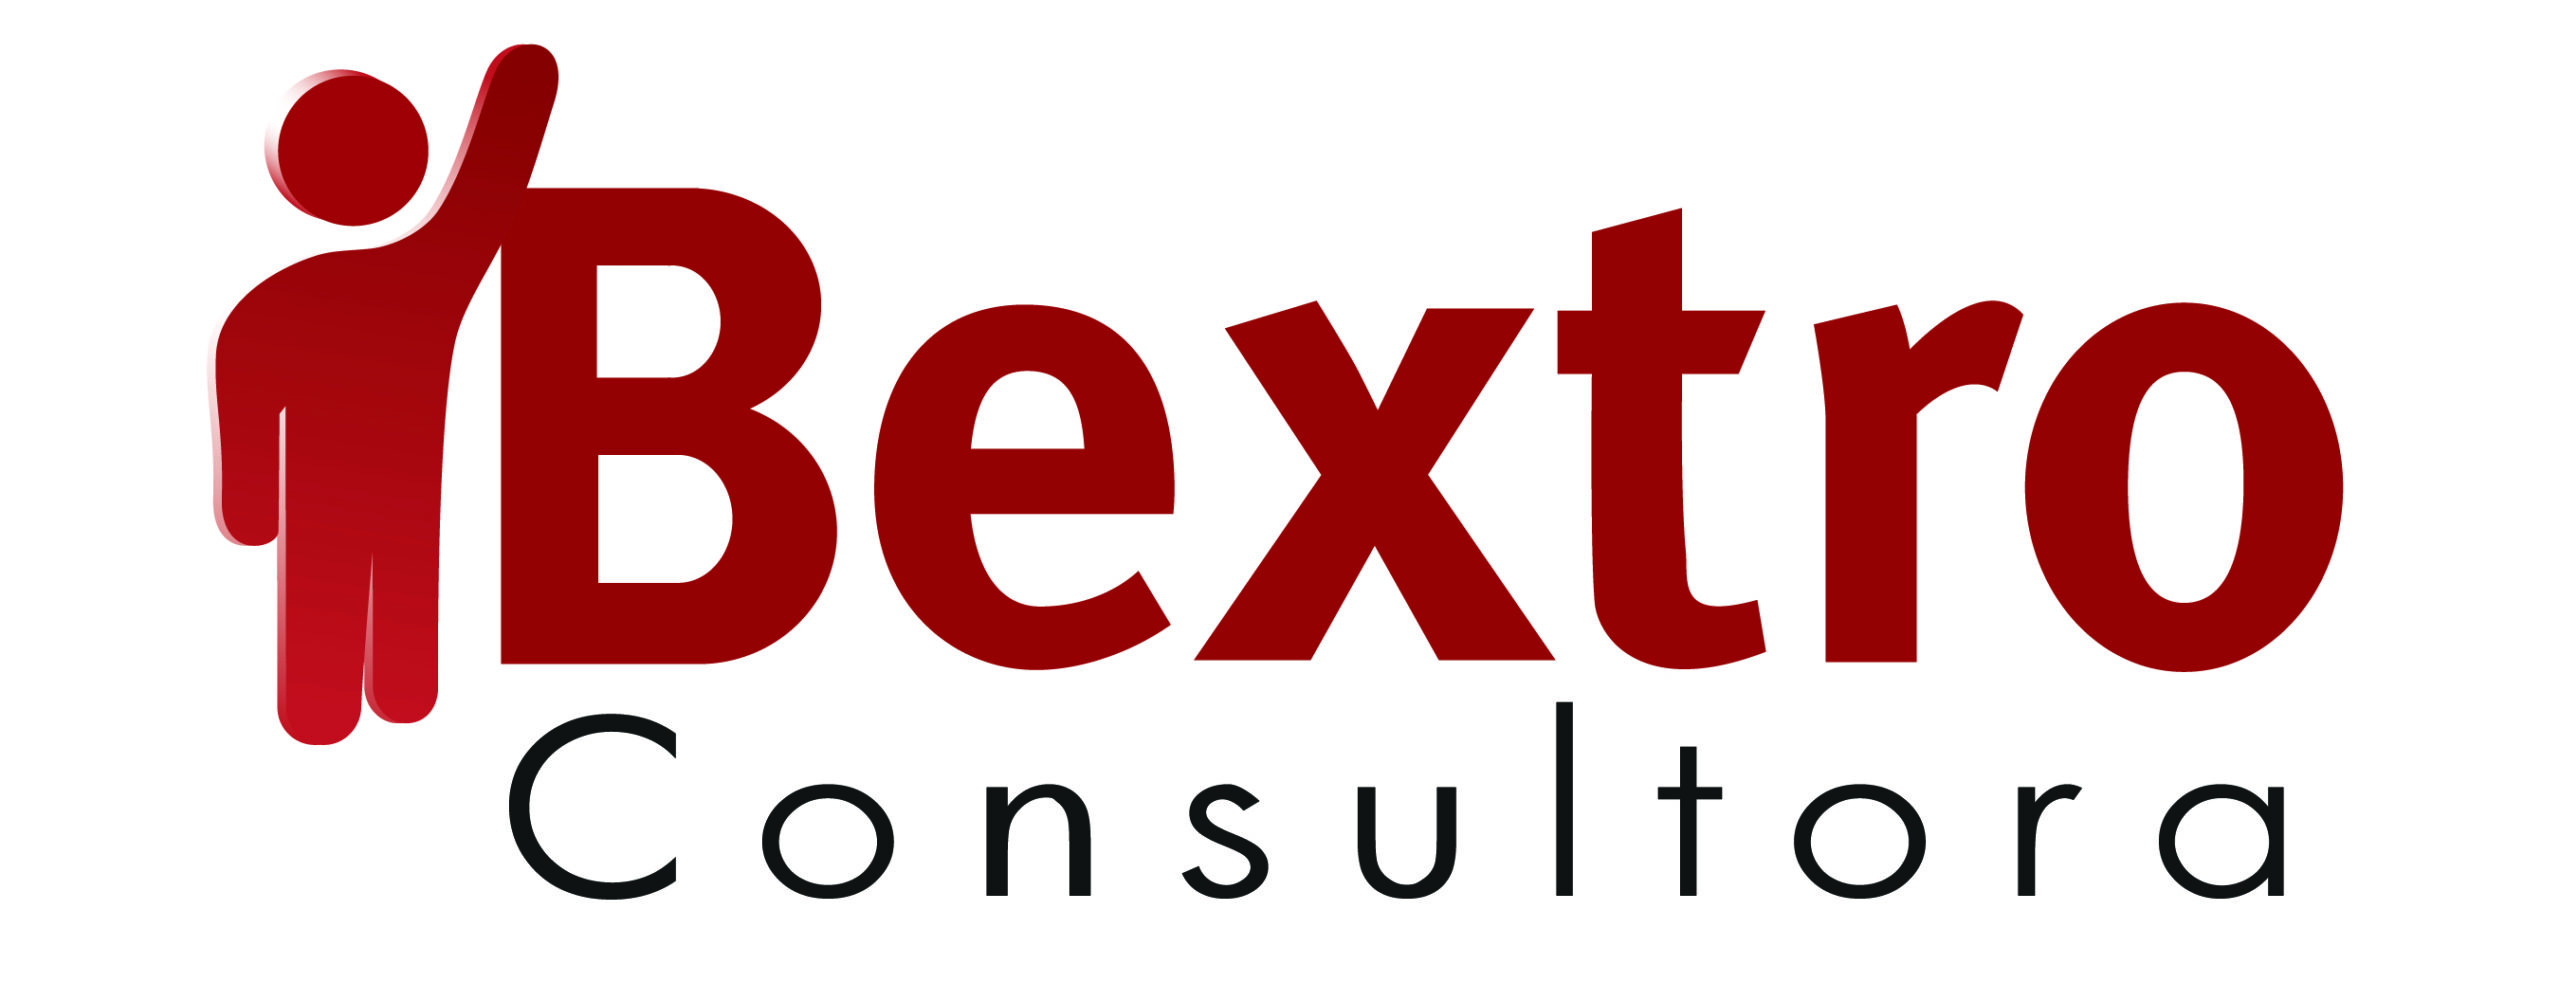 Bextro Consultora